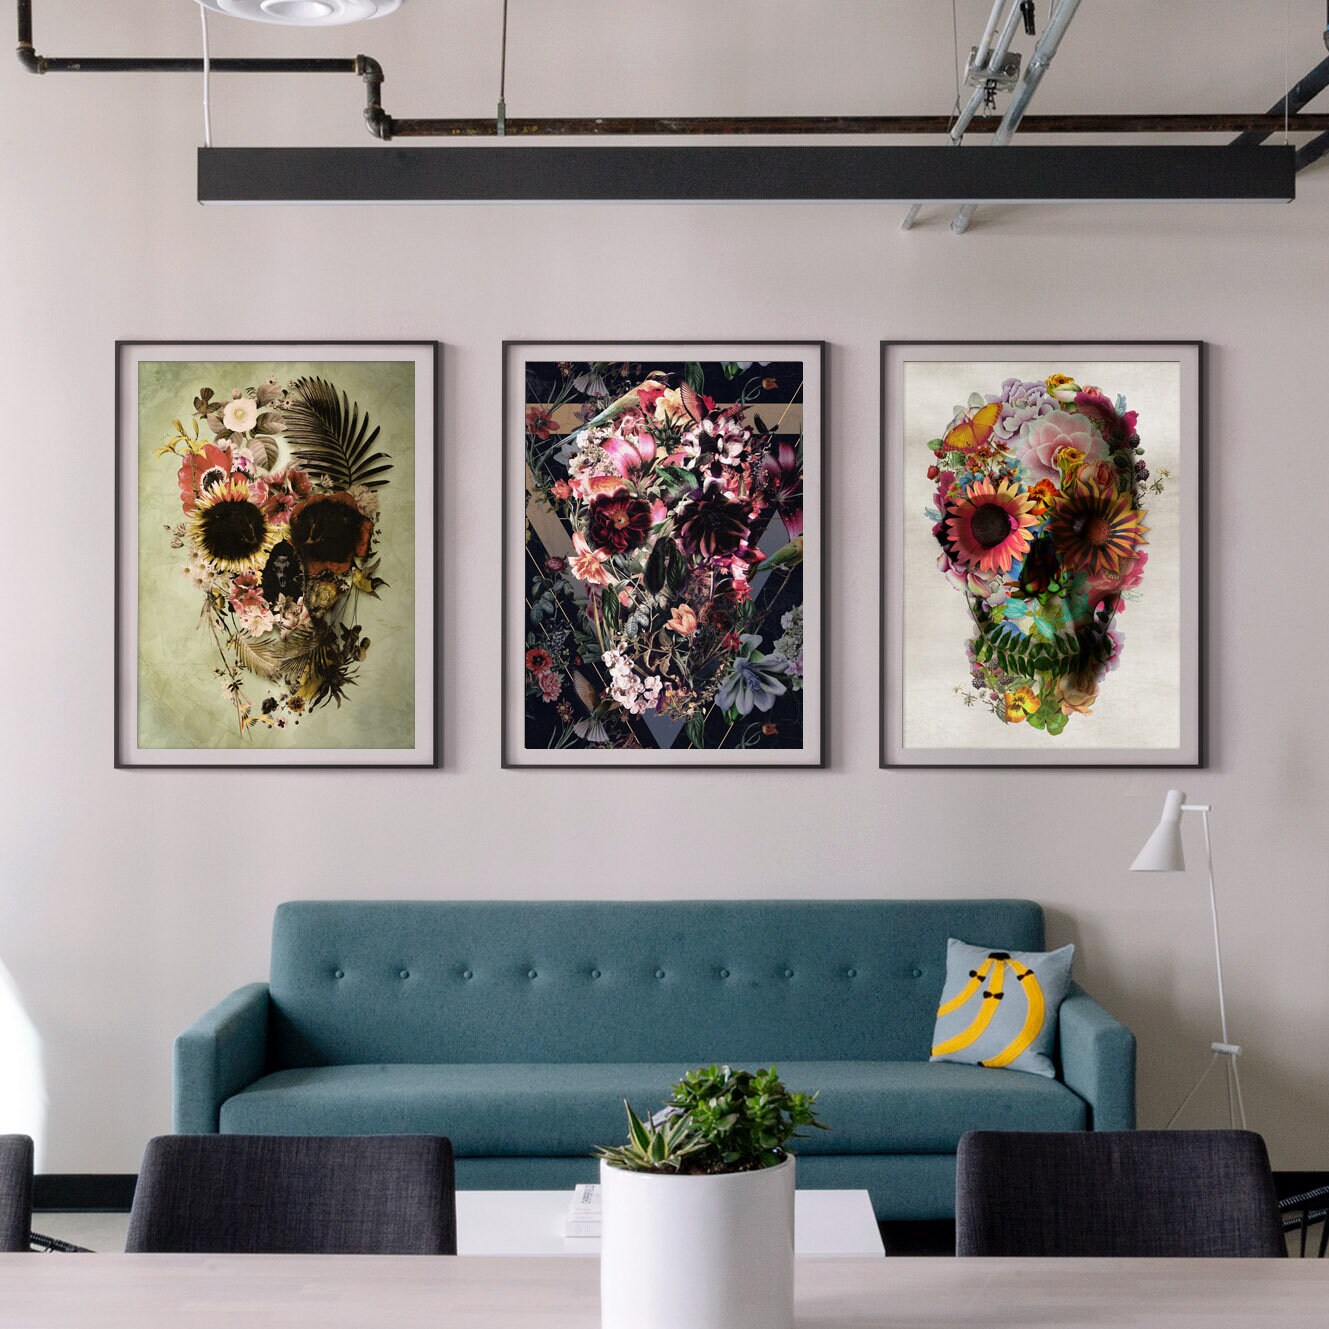 Flower Skull Art Print, Sugar Skull Poster Home Decor, Floral Skull Print Wall Art Gift, Bohemian Art Flower Skull Illustration Wall Decor